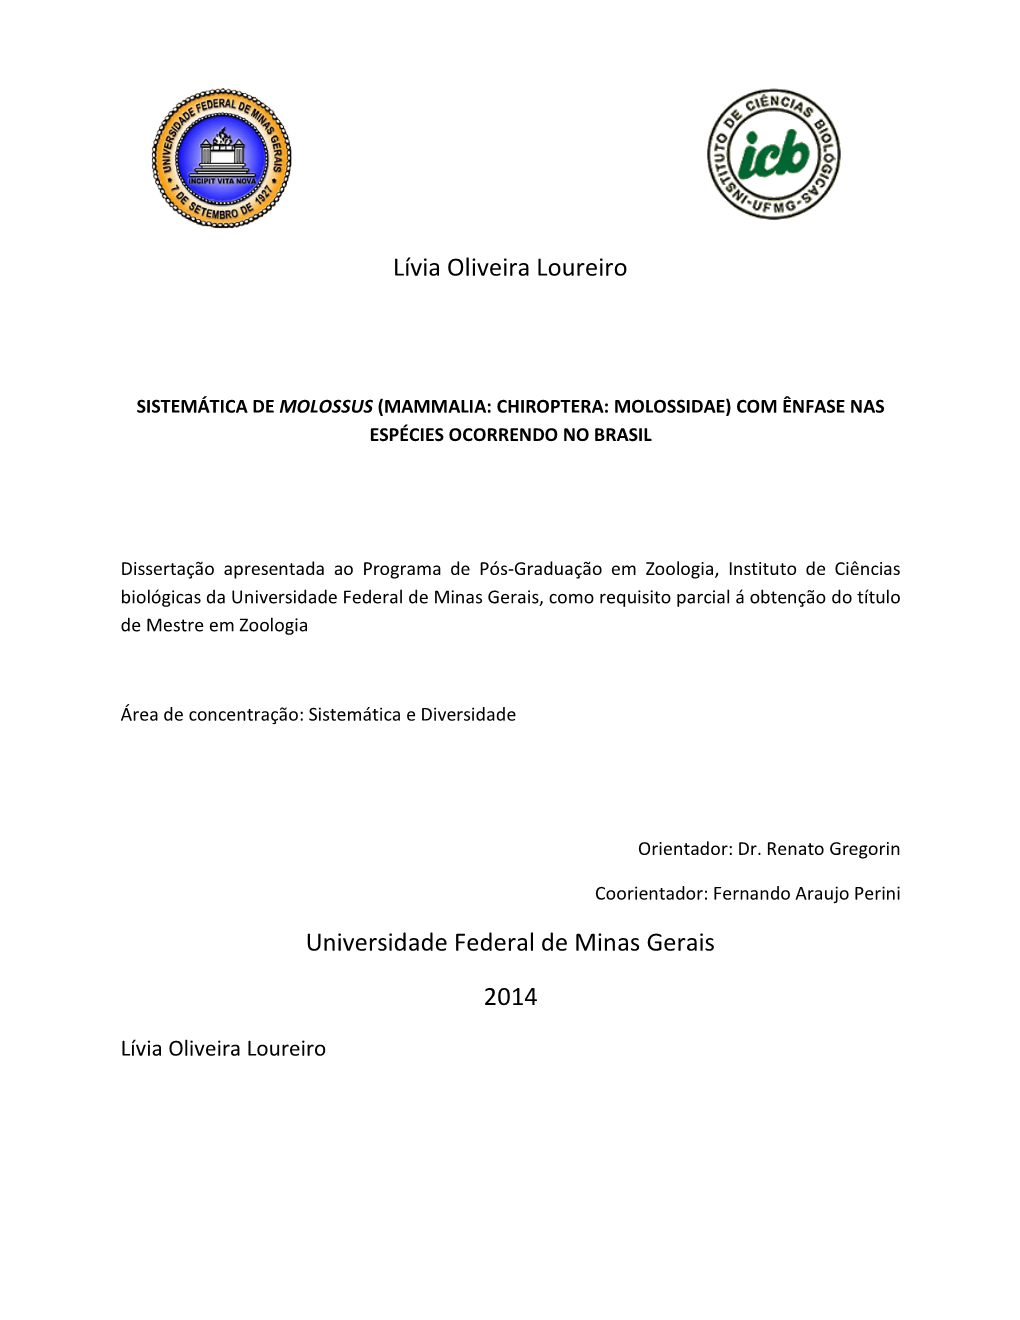 Lívia Oliveira Loureiro Universidade Federal De Minas Gerais 2014